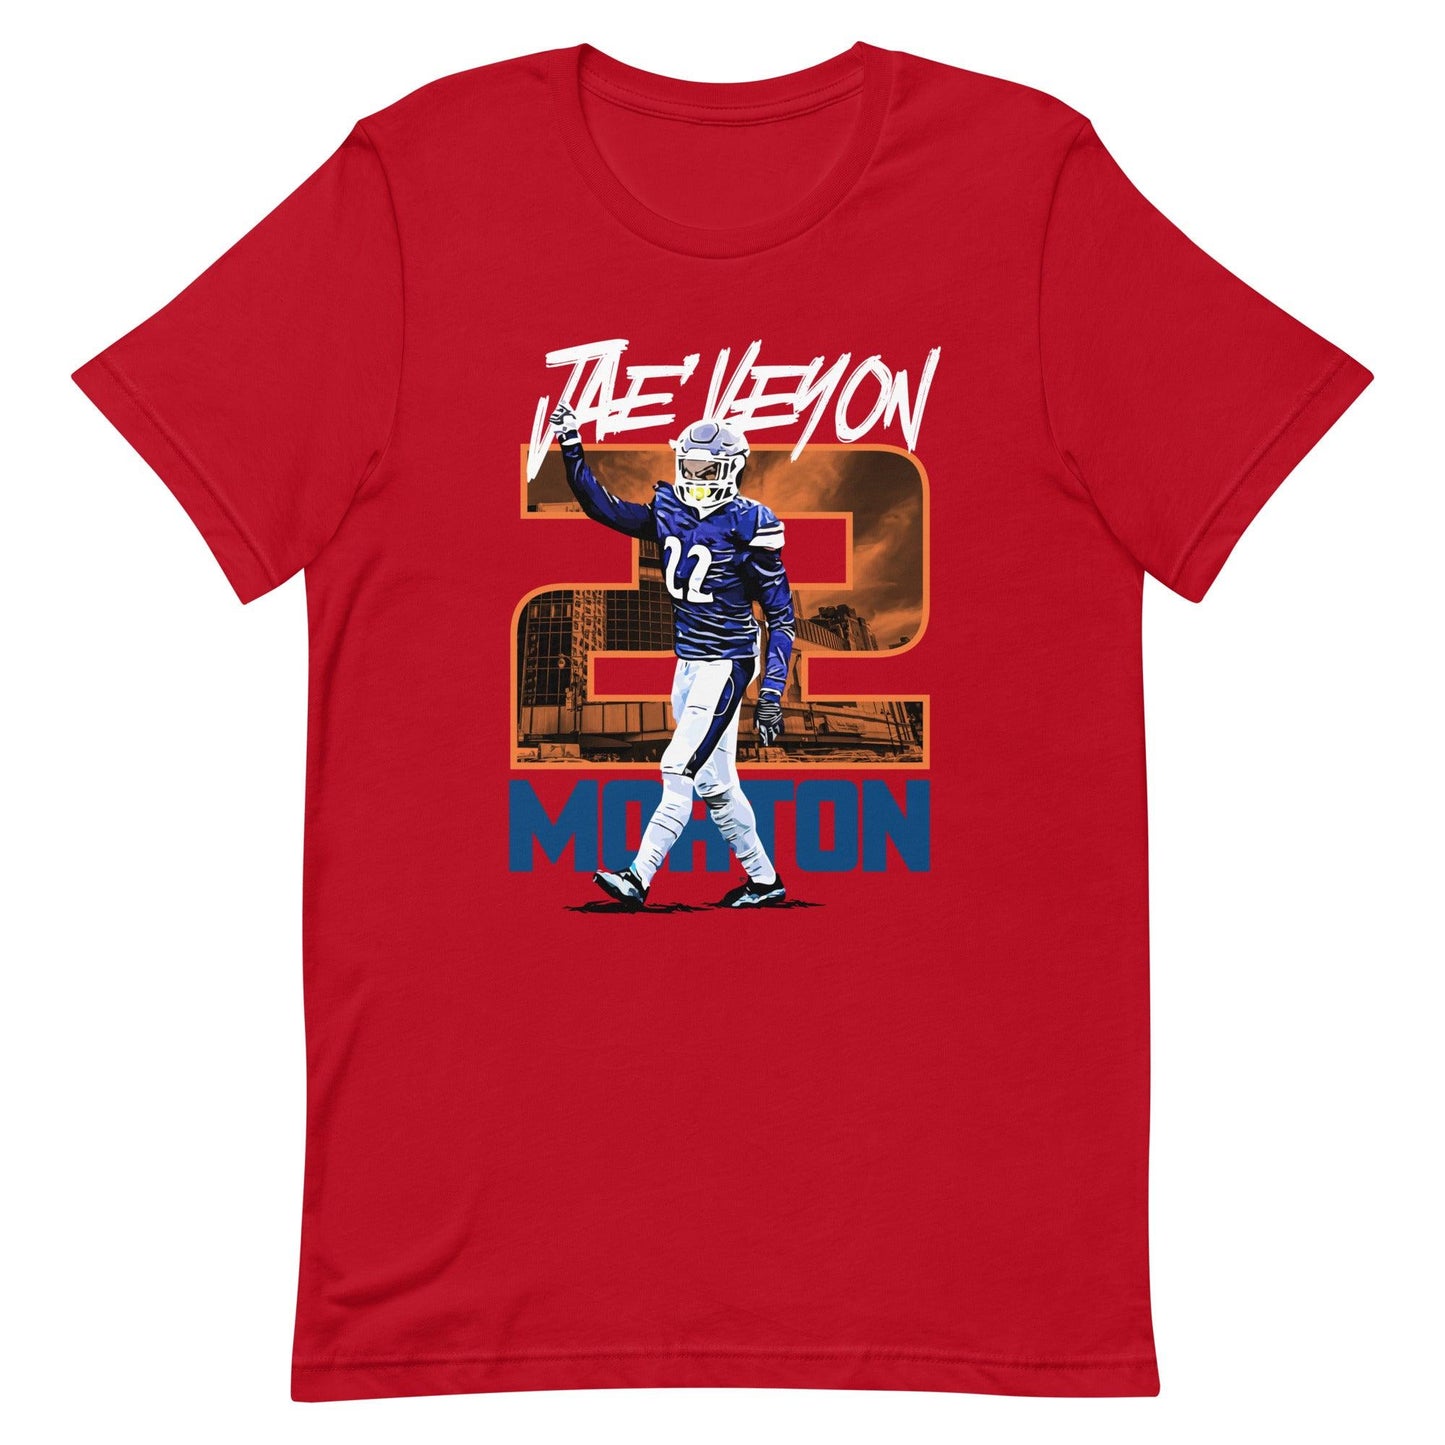 Jae’Veyon Morton "Gameday" t-shirt - Fan Arch